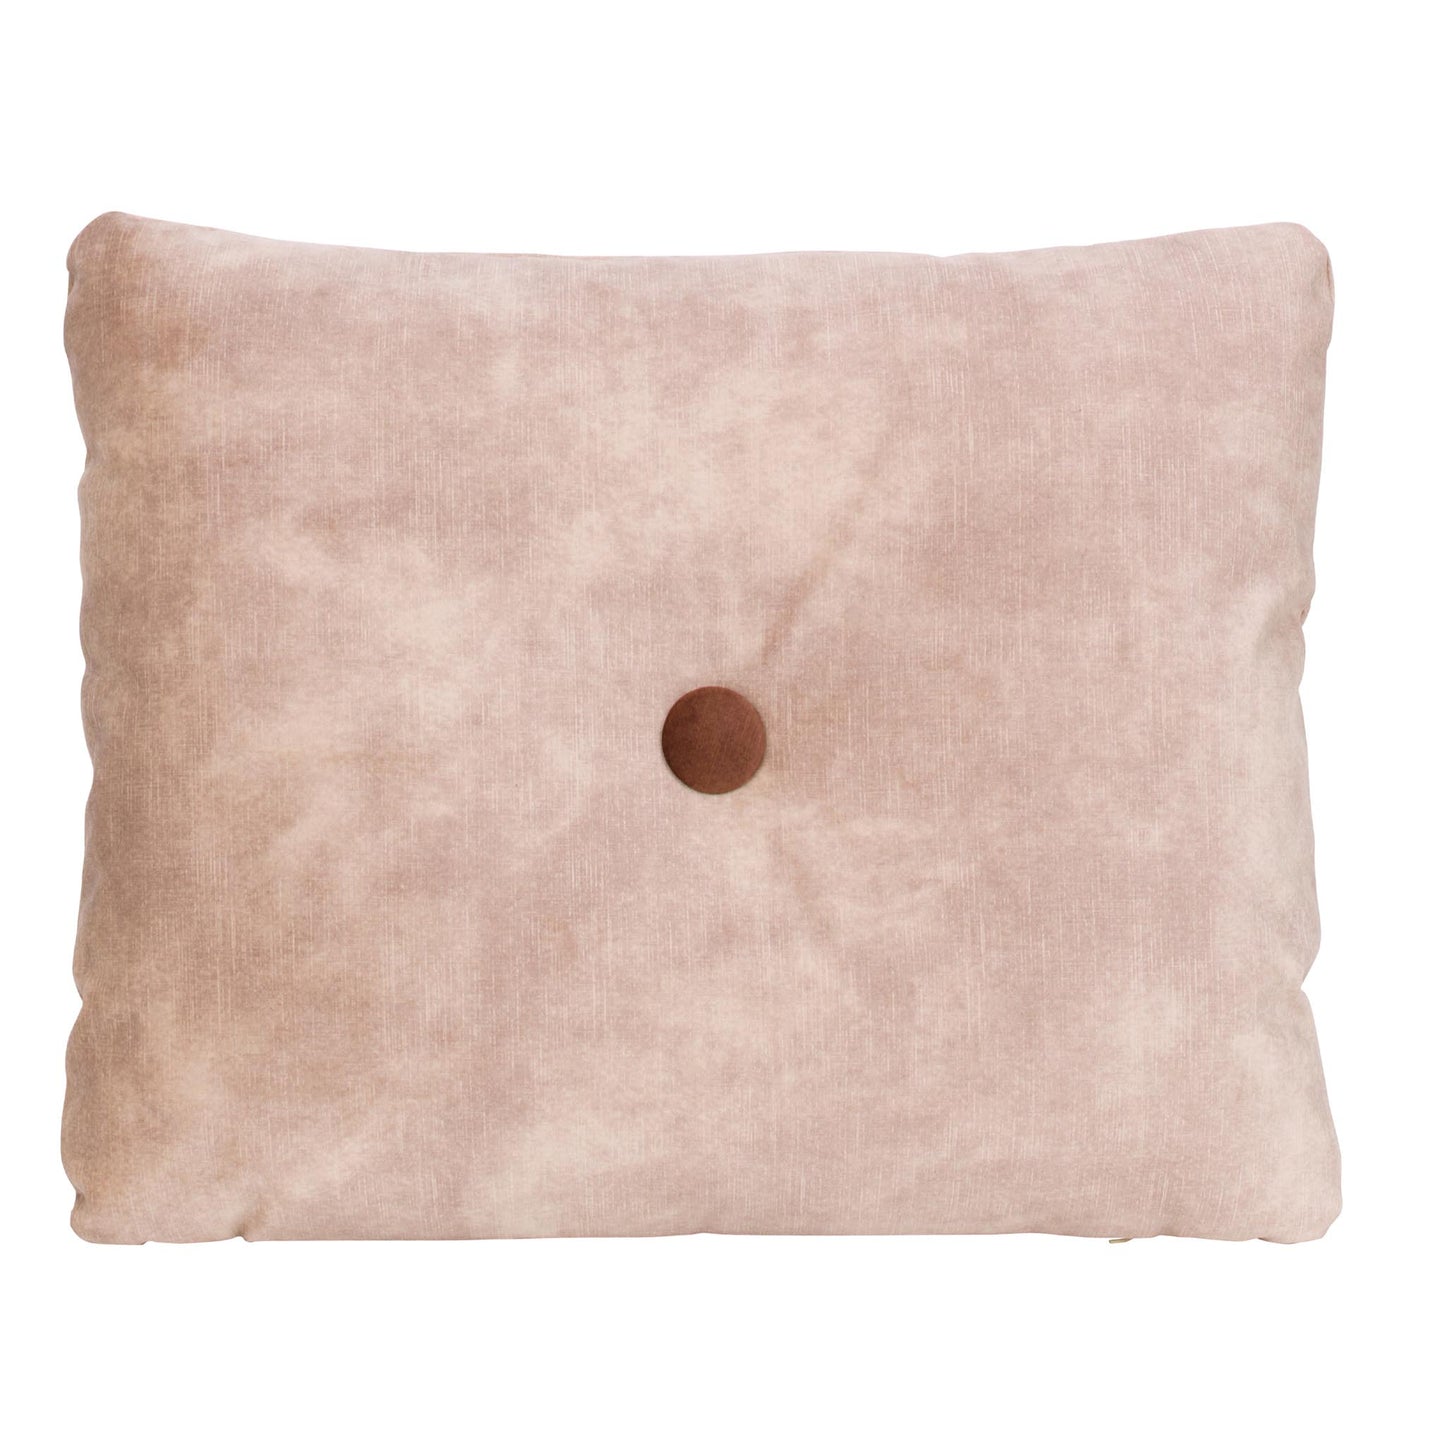 Ornamental pillow m/1 button